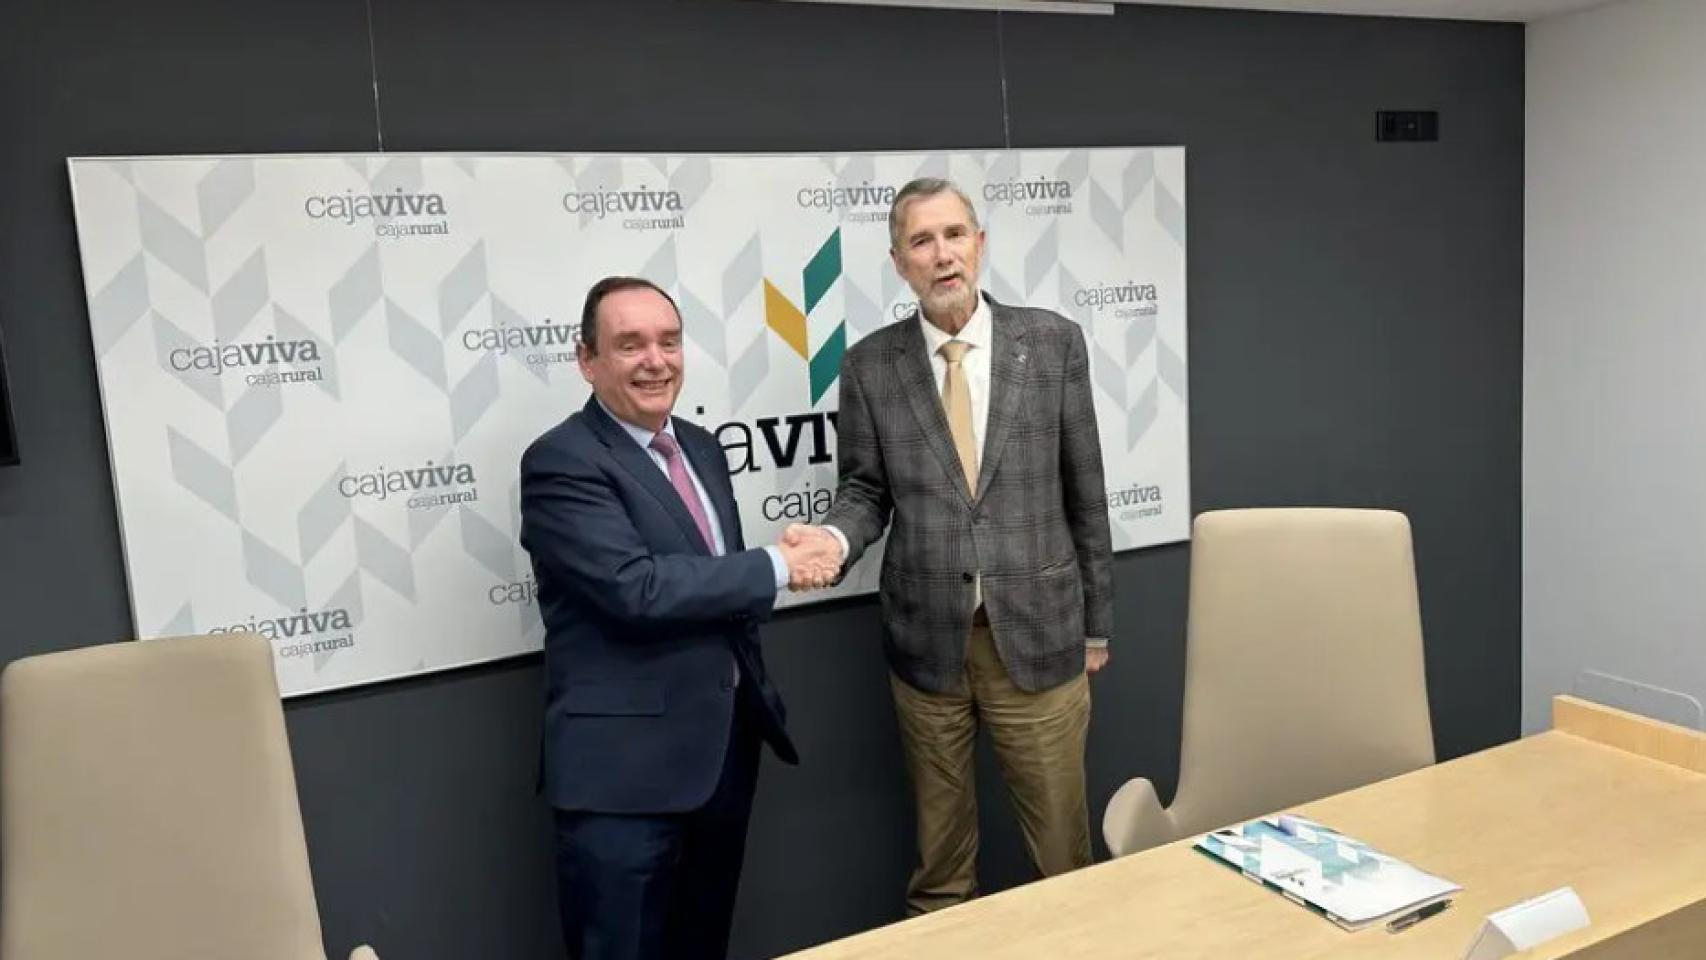 Ramón Sobremonte, director general de Cajaviva Caja Rural y Manuel Pérez Mateos, rector de la Universidad de Burgos, firmando el acuerdo de colaboración